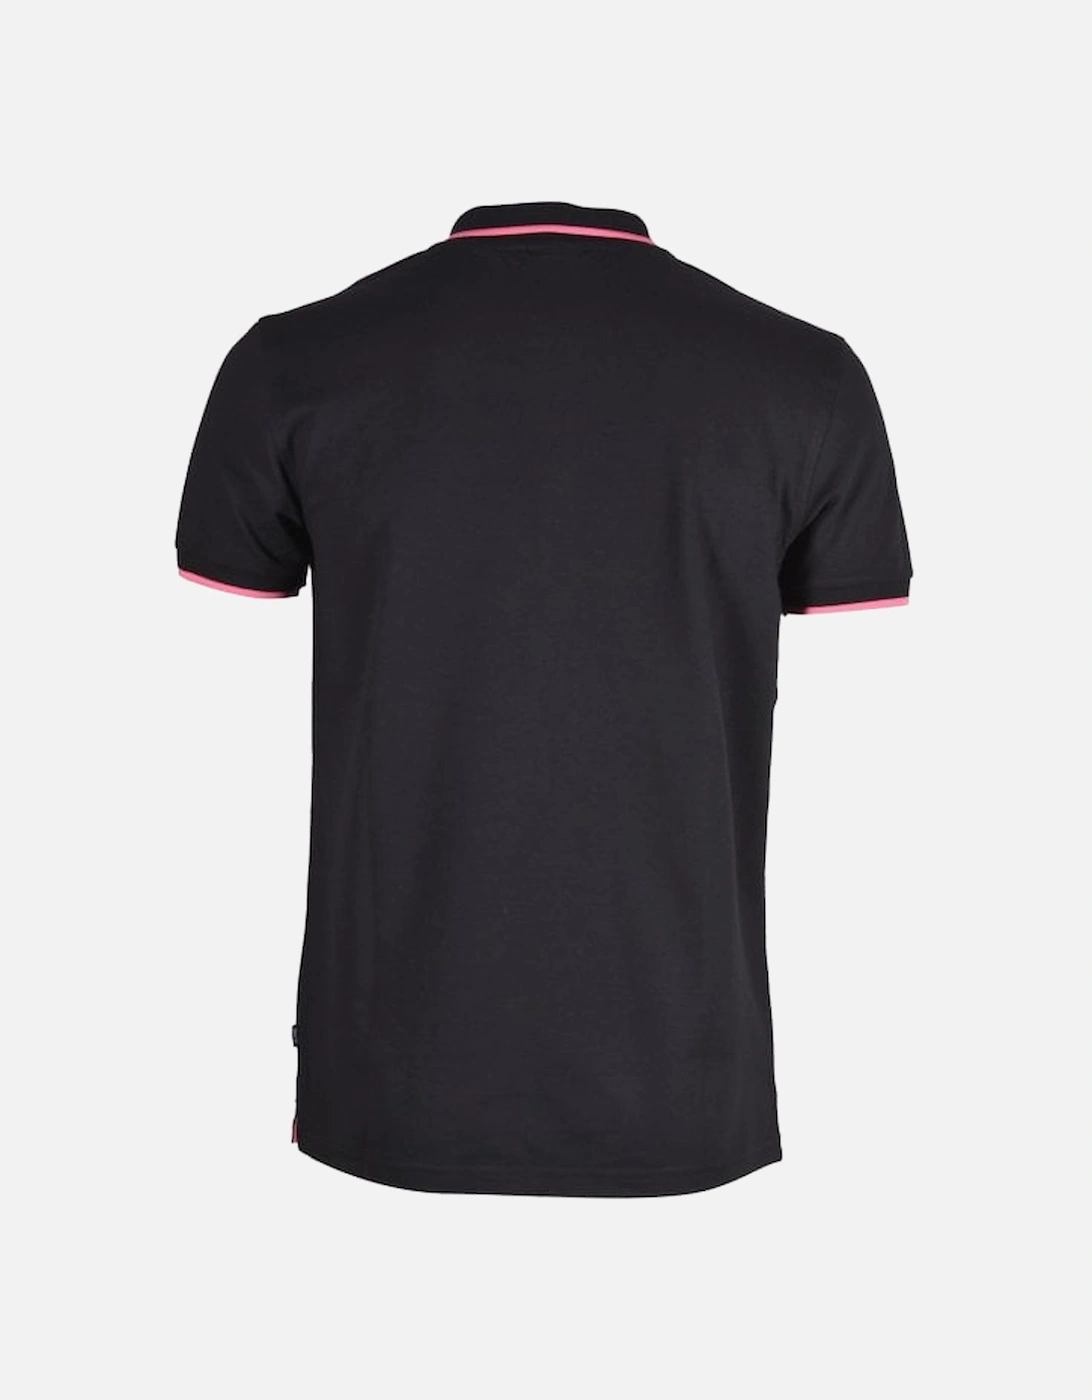 Jeans Qtr Zip Contrast Pique Polo Shirt, Black/pink